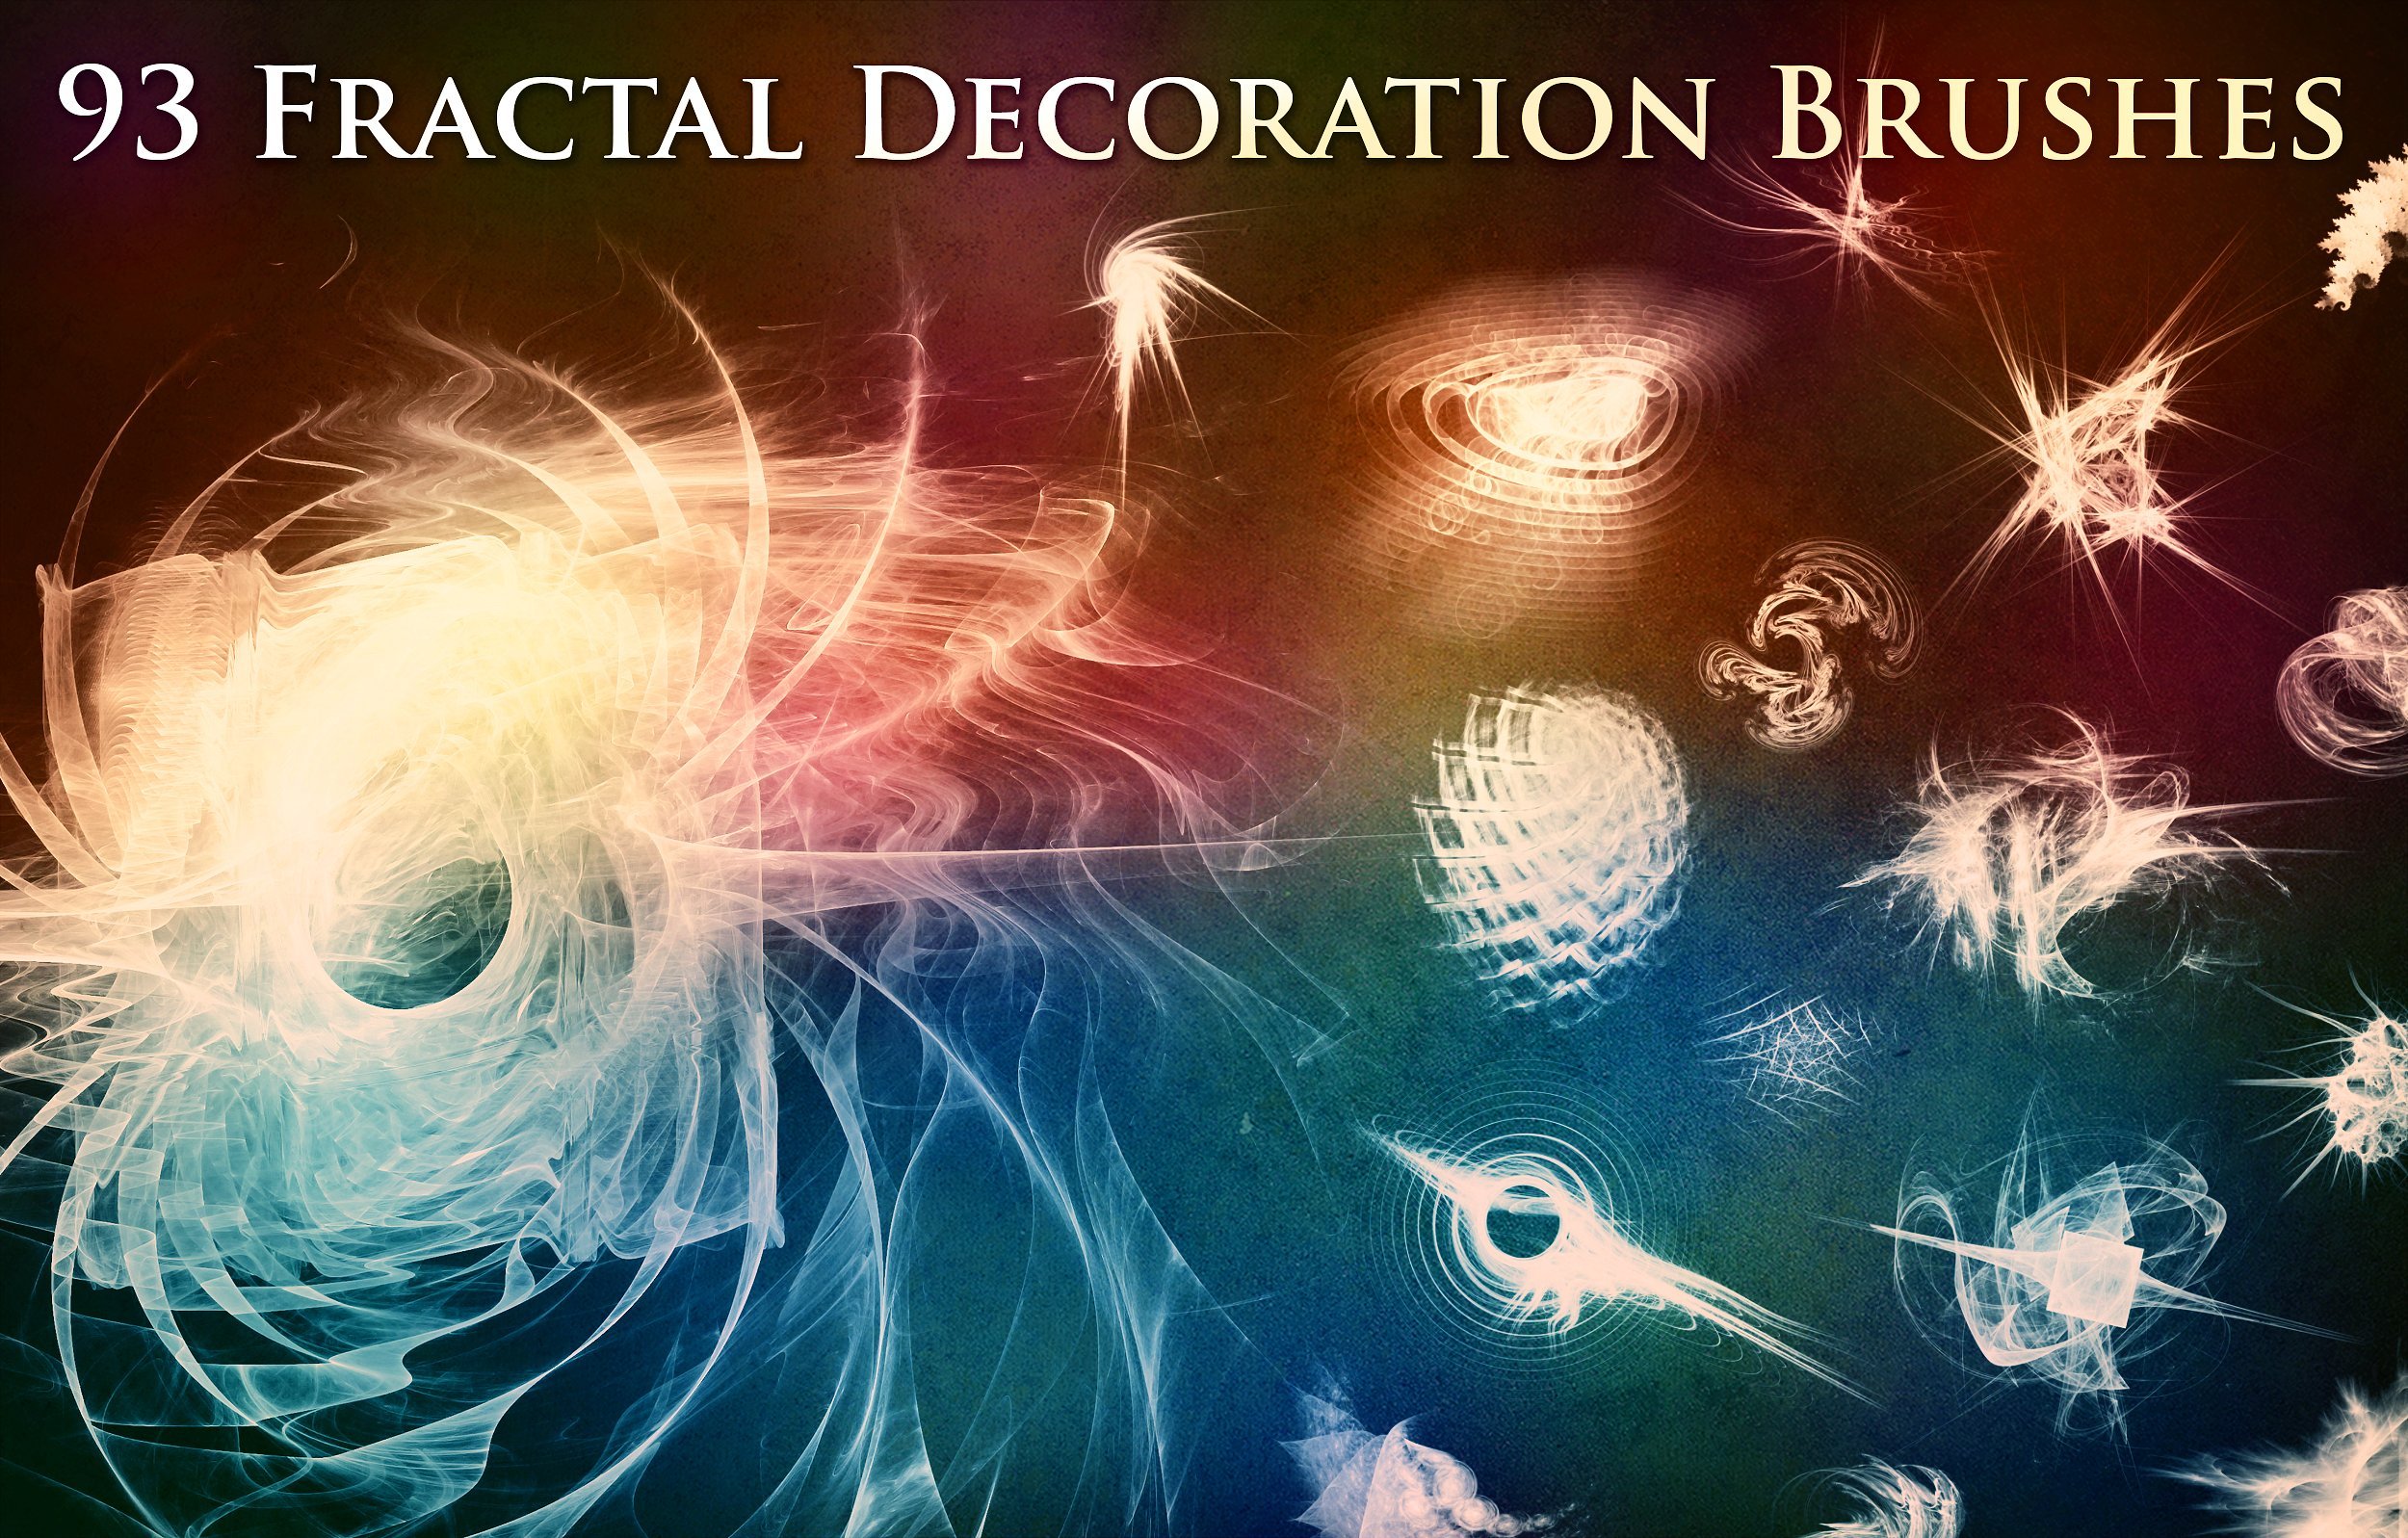 93 fractal decoration brushes.